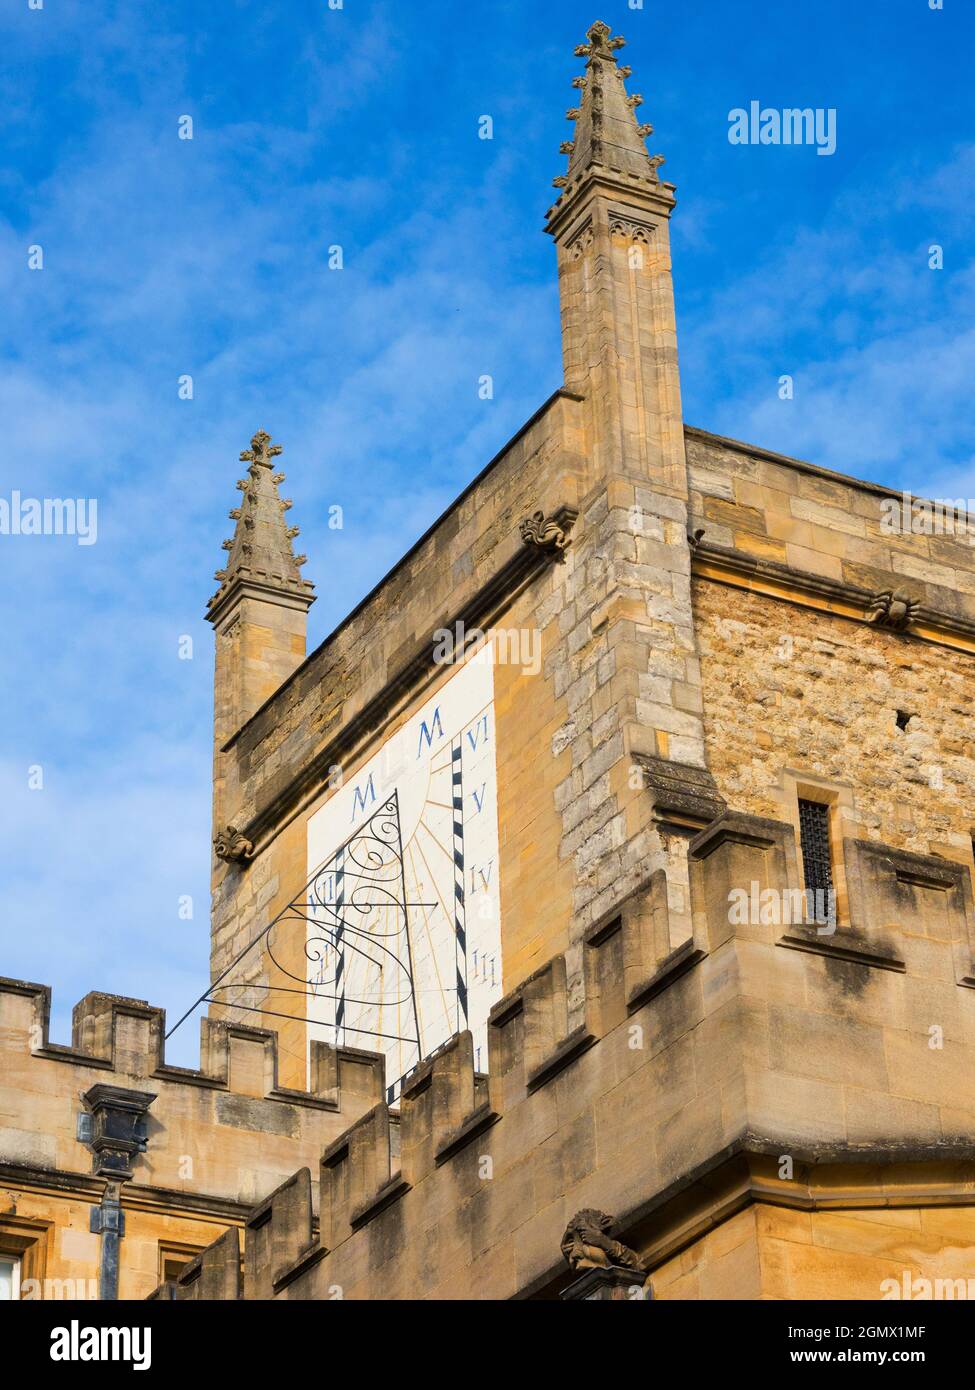 Oxford, England - 13. September 2019; das New College wurde 1379 von William of Wykeham gegründet und ist damit eines der ältesten Colleges der Universität Oxford. Stockfoto